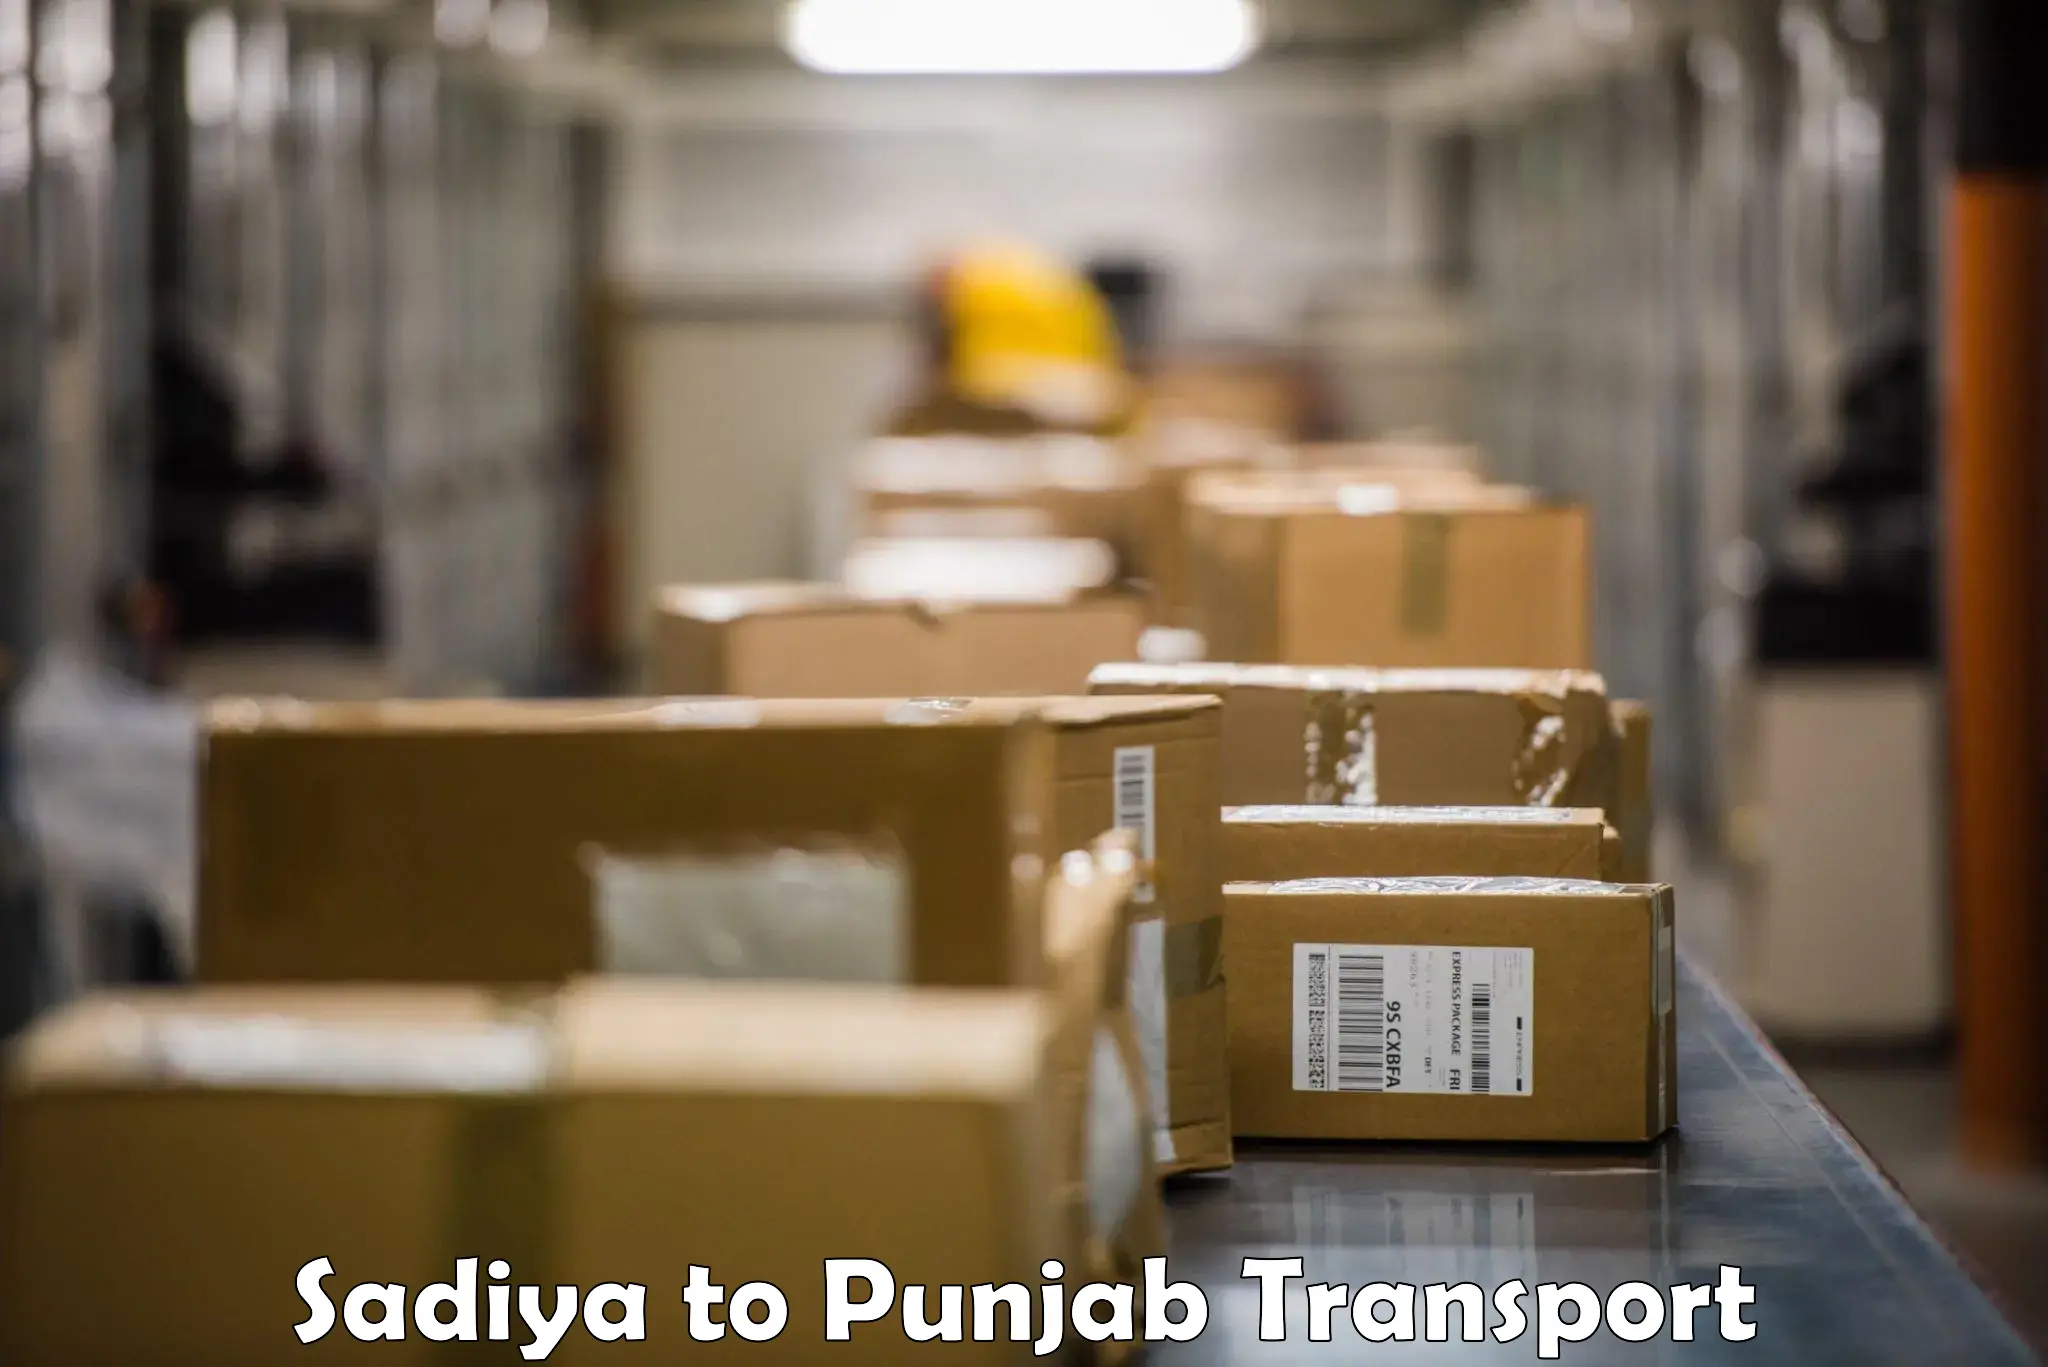 Bike transport service Sadiya to Punjab